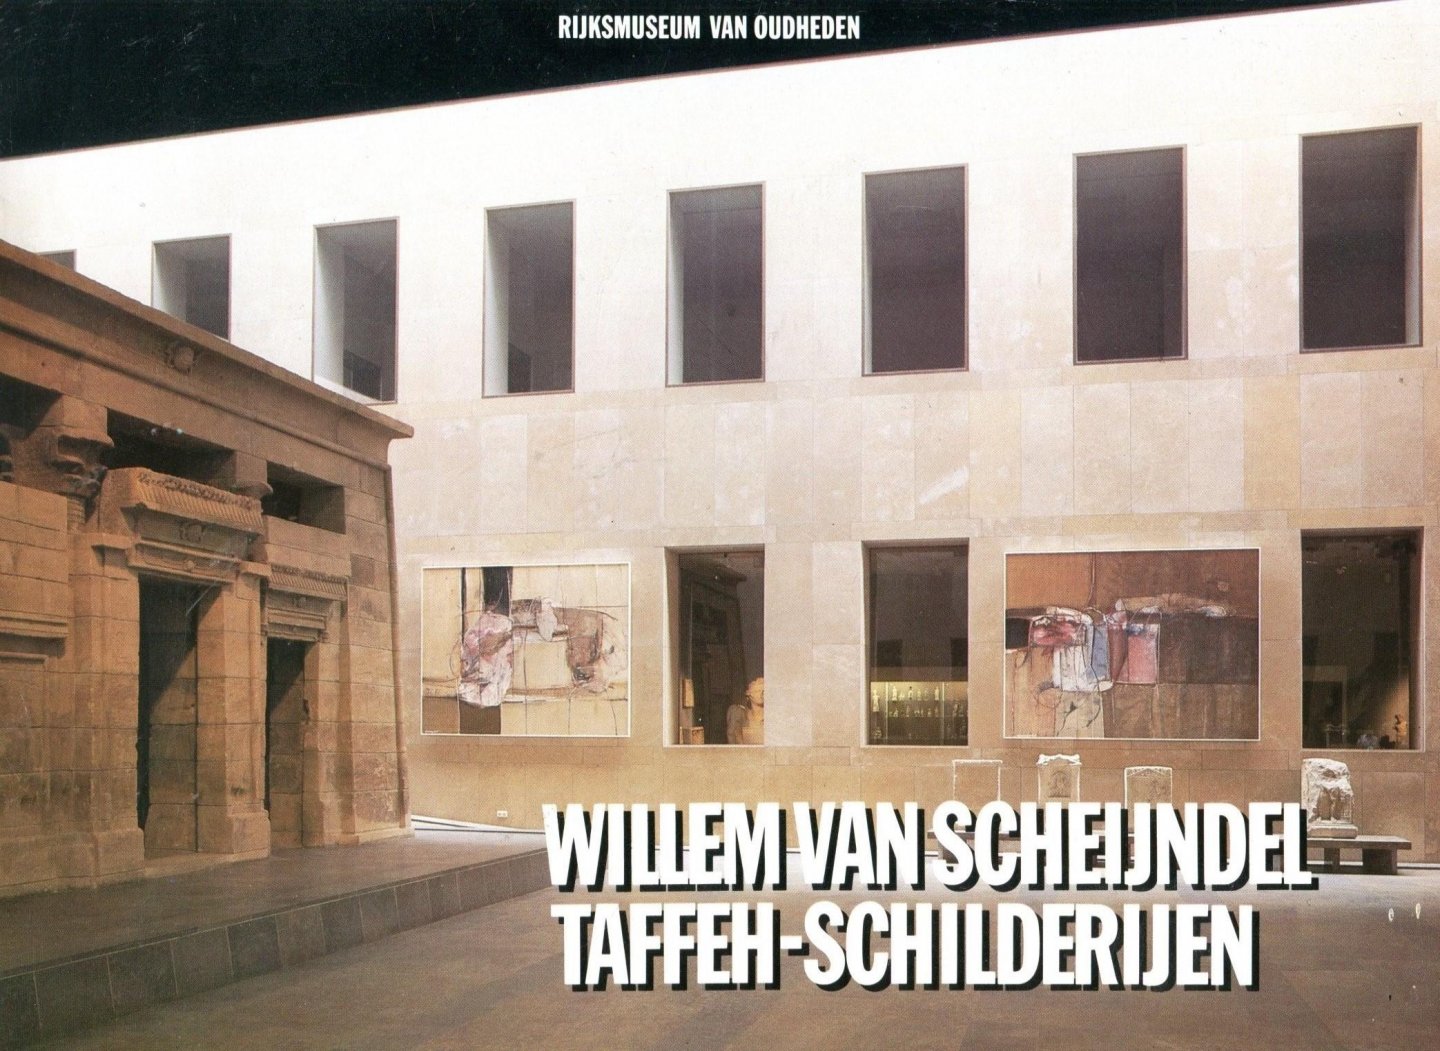  - Willem van Scheijndel - Taffeh-schilderijen